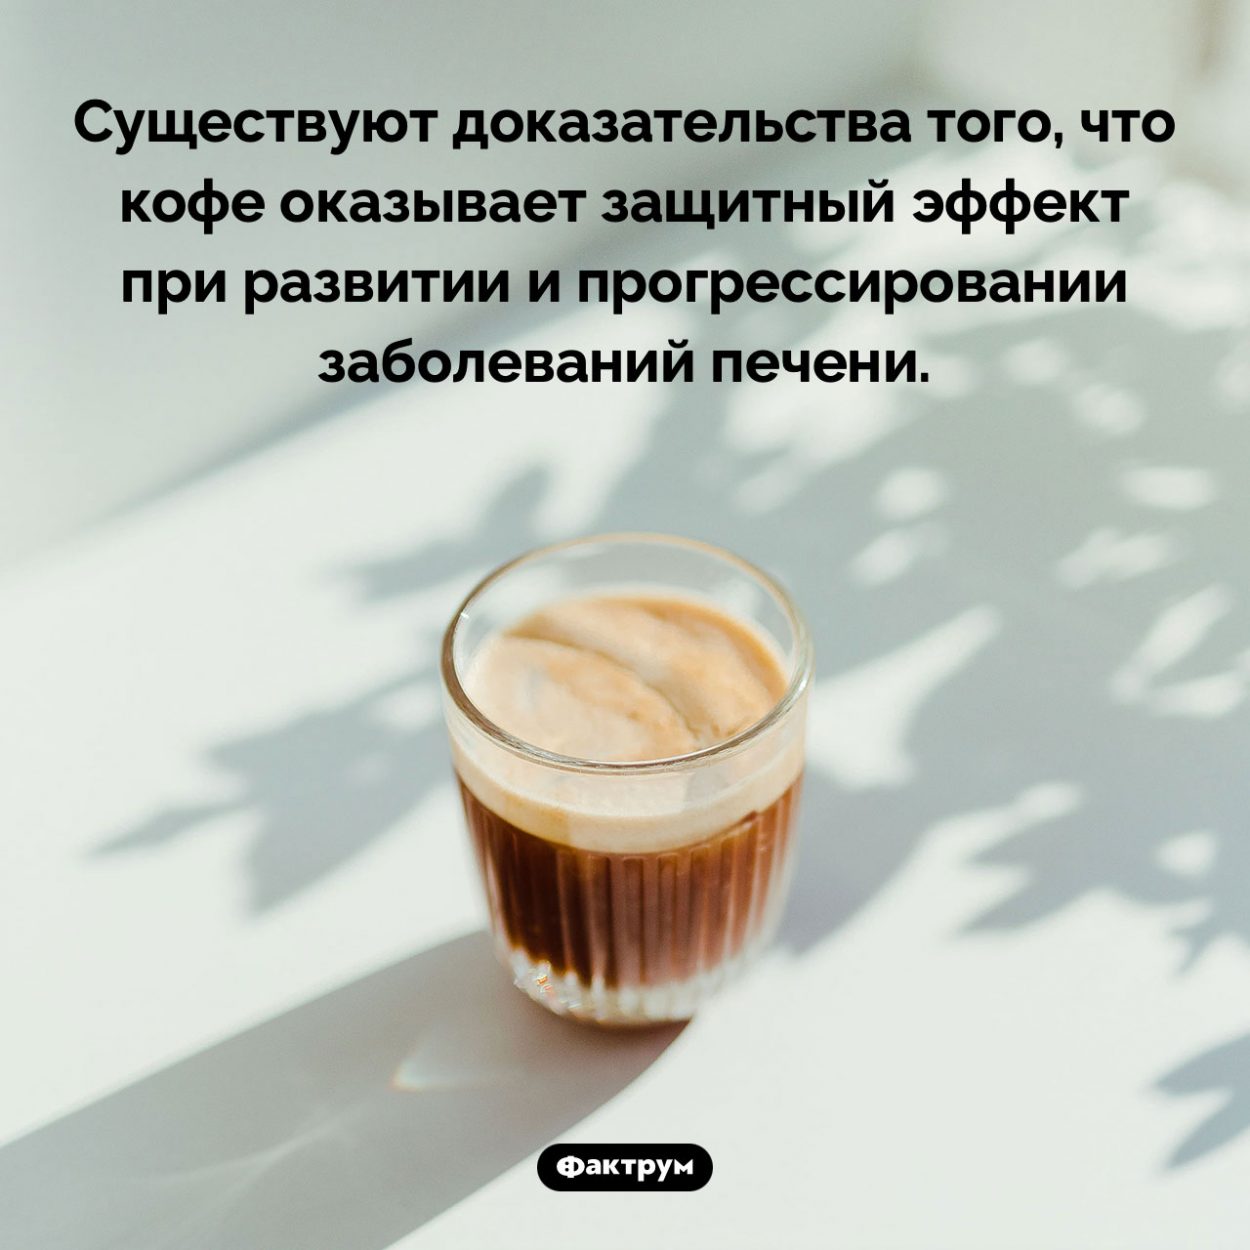 Кофе влияет на состояние печени. Существуют доказательства того, что кофе оказывает защитный эффект при развитии и прогрессировании заболеваний печени.